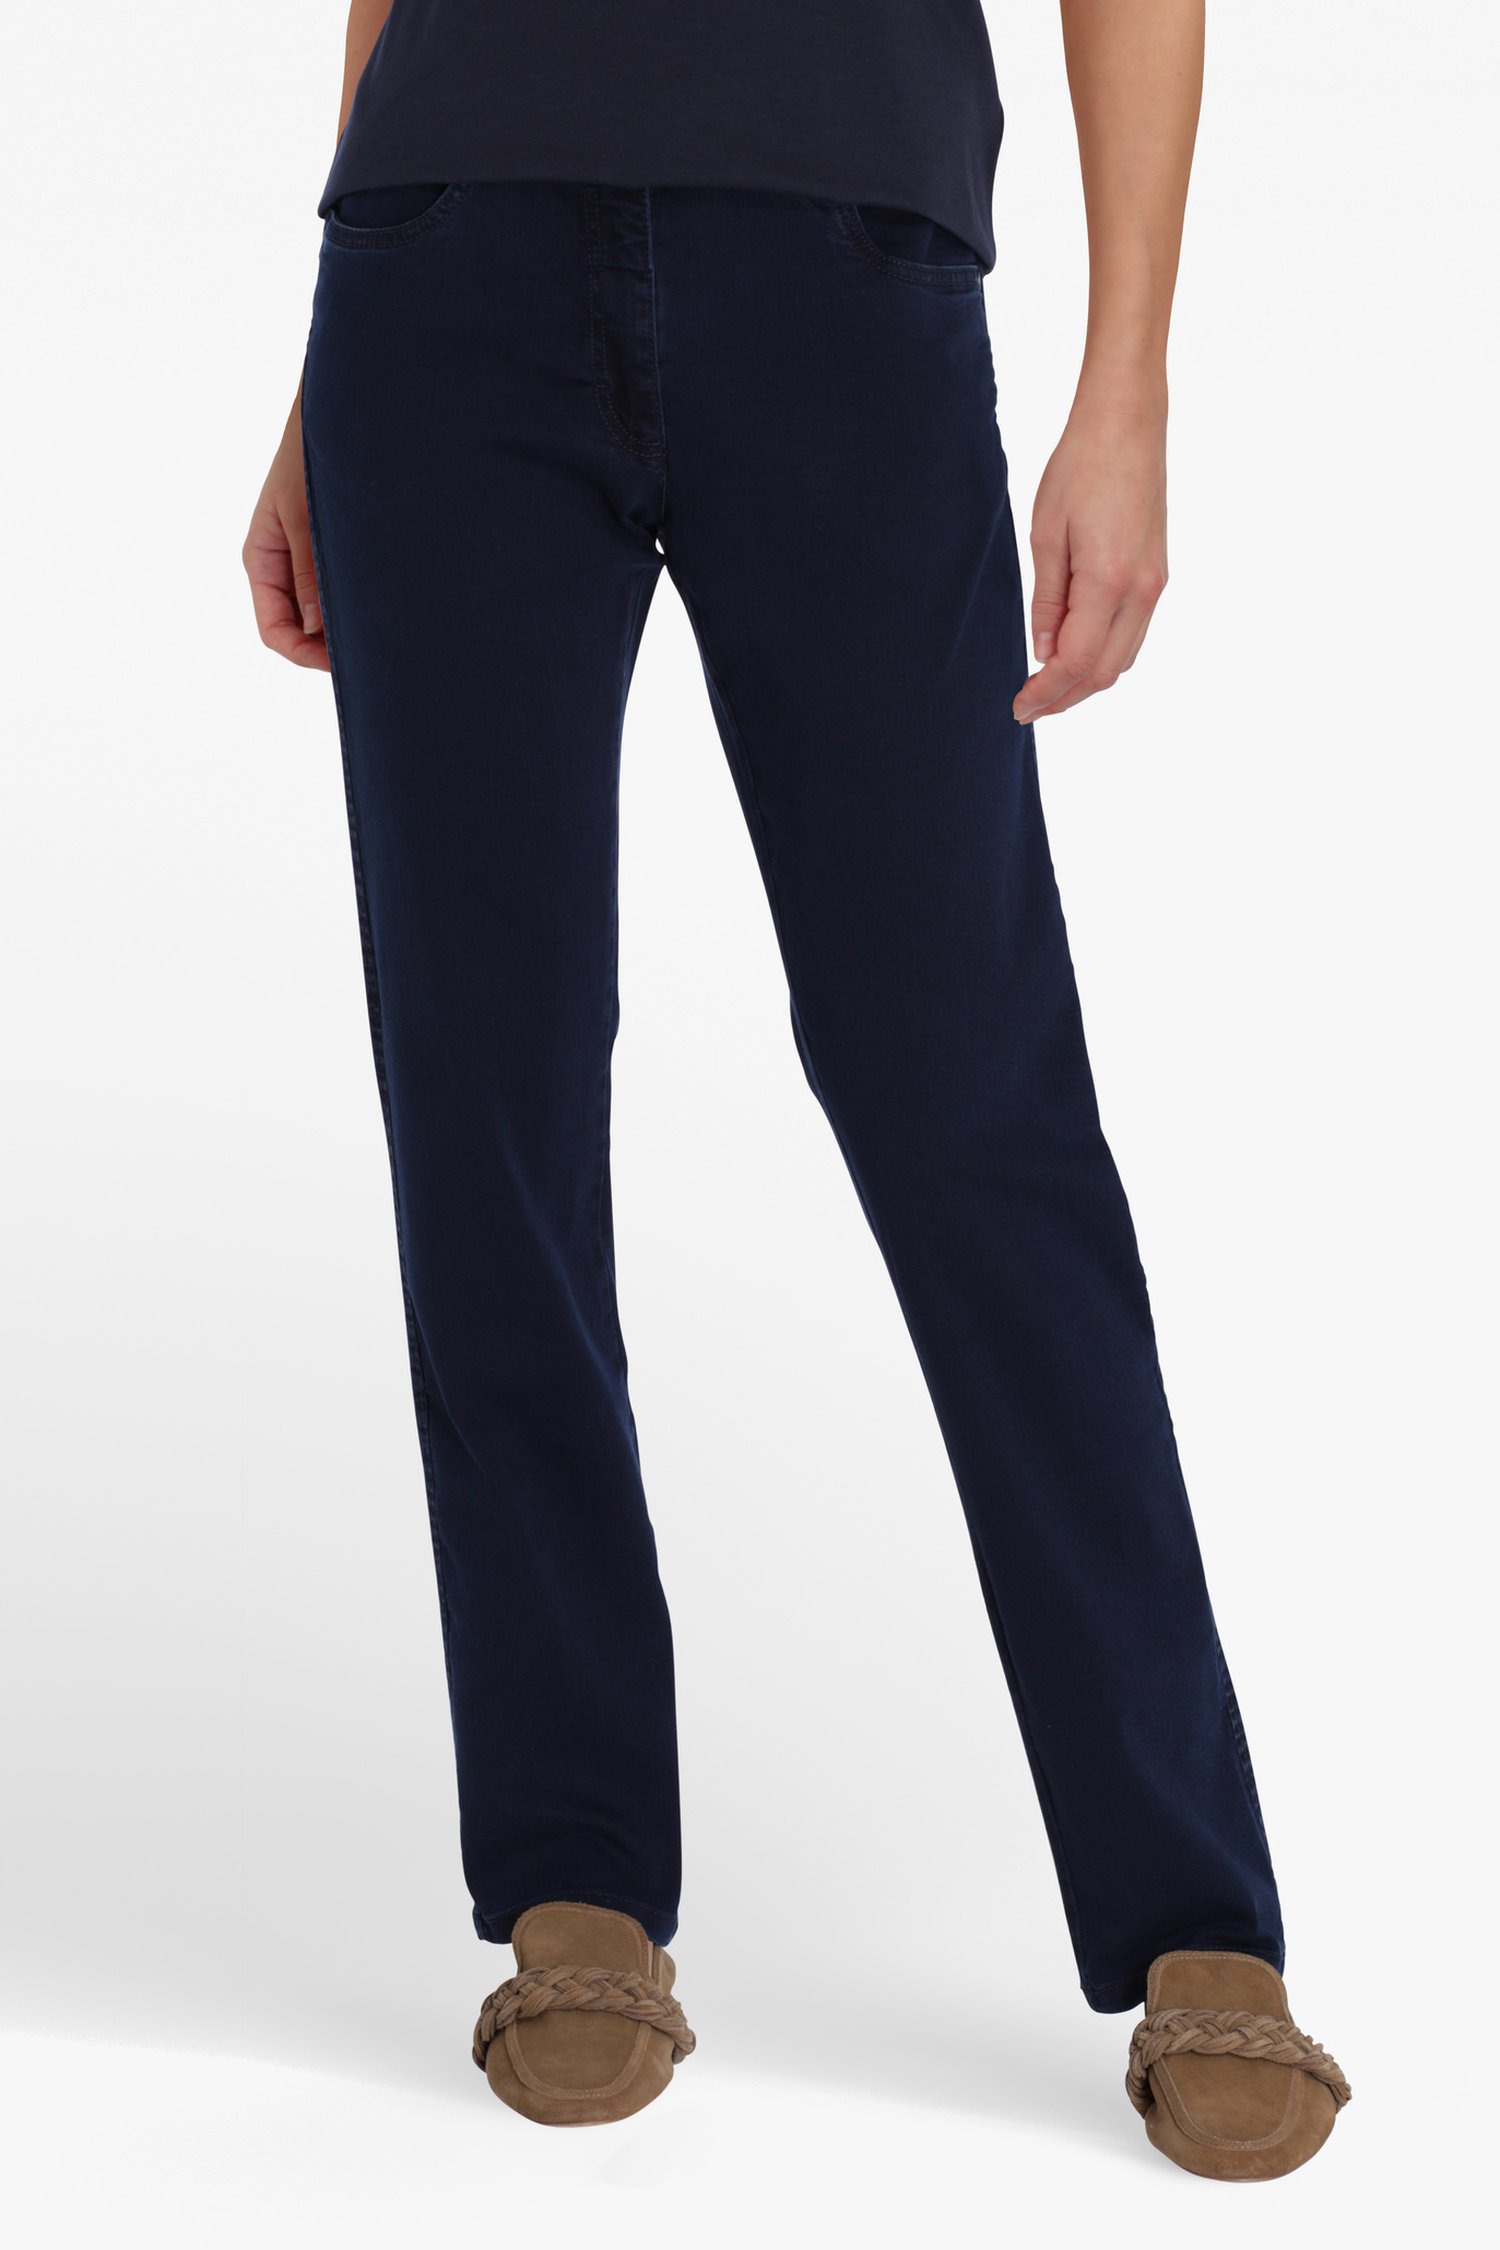 Blauwe jeans met hoge taille - slim fit - L30 van Bicalla voor Dames